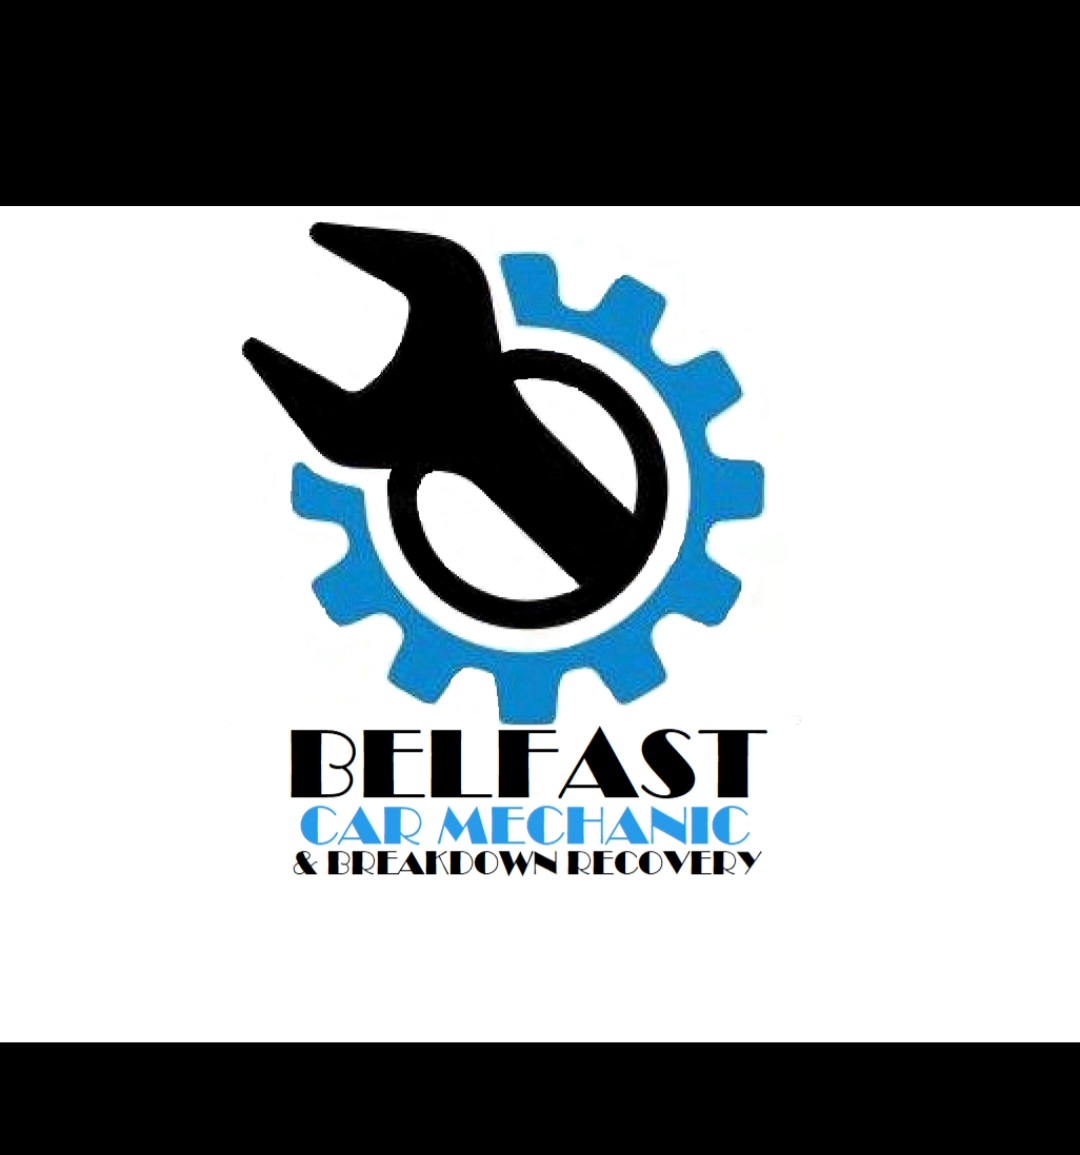 Belfast Car Mechanic & Breakdown Recovery